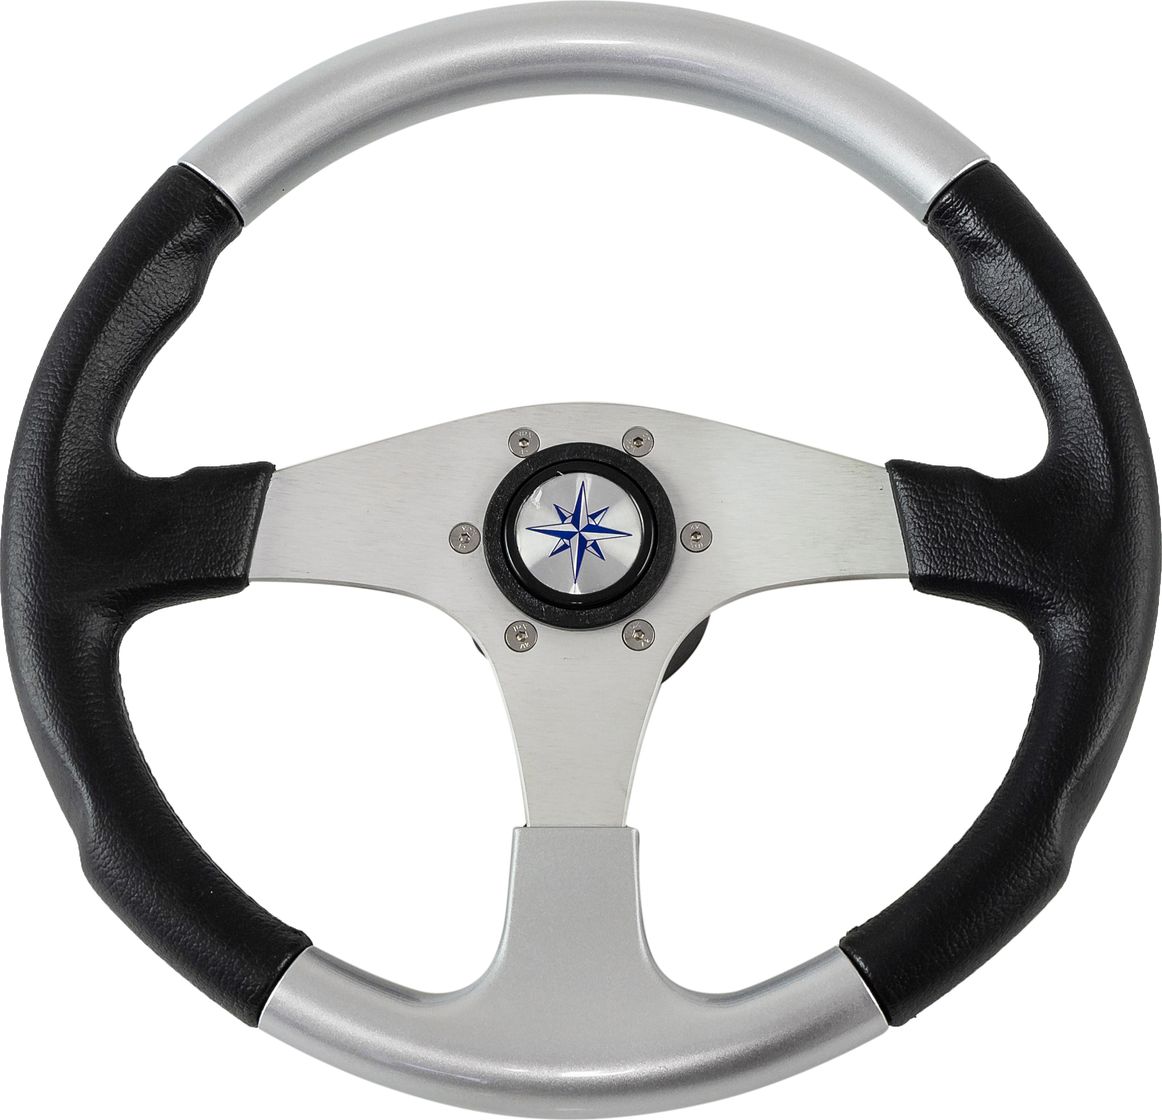 Рулевое колесо EVO MARINE 2 обод черносеребряный, спицы серебряные д. 355 мм VN850001-93 рулевое колесо riva rsl обод серый спицы серебряные д 360 мм vn735022 03